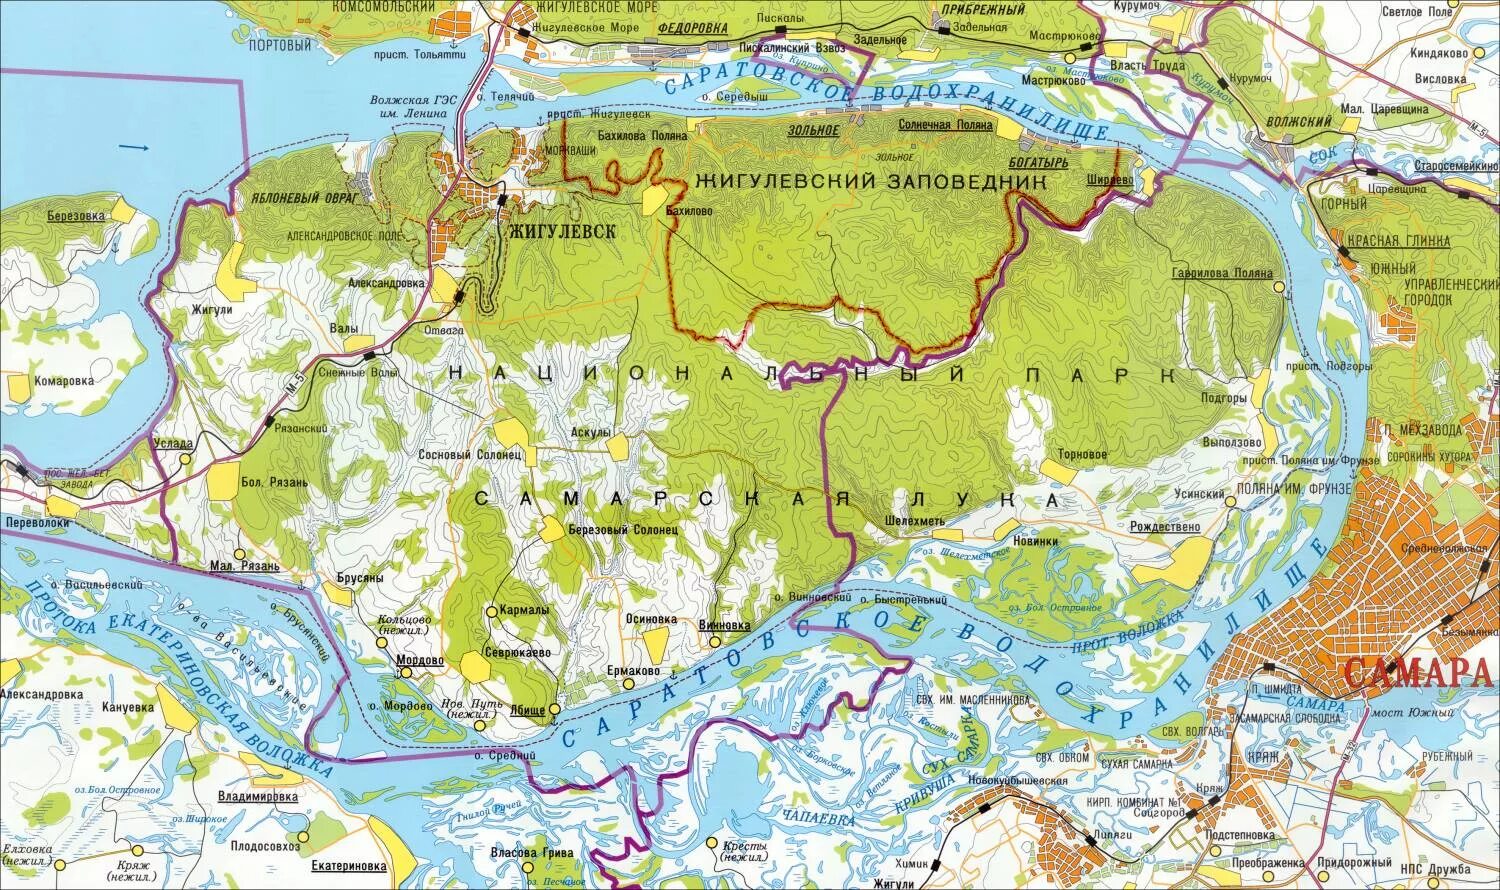 Места где будет располагаться. Карта Жигулевского заповедника и Самарской Луки.